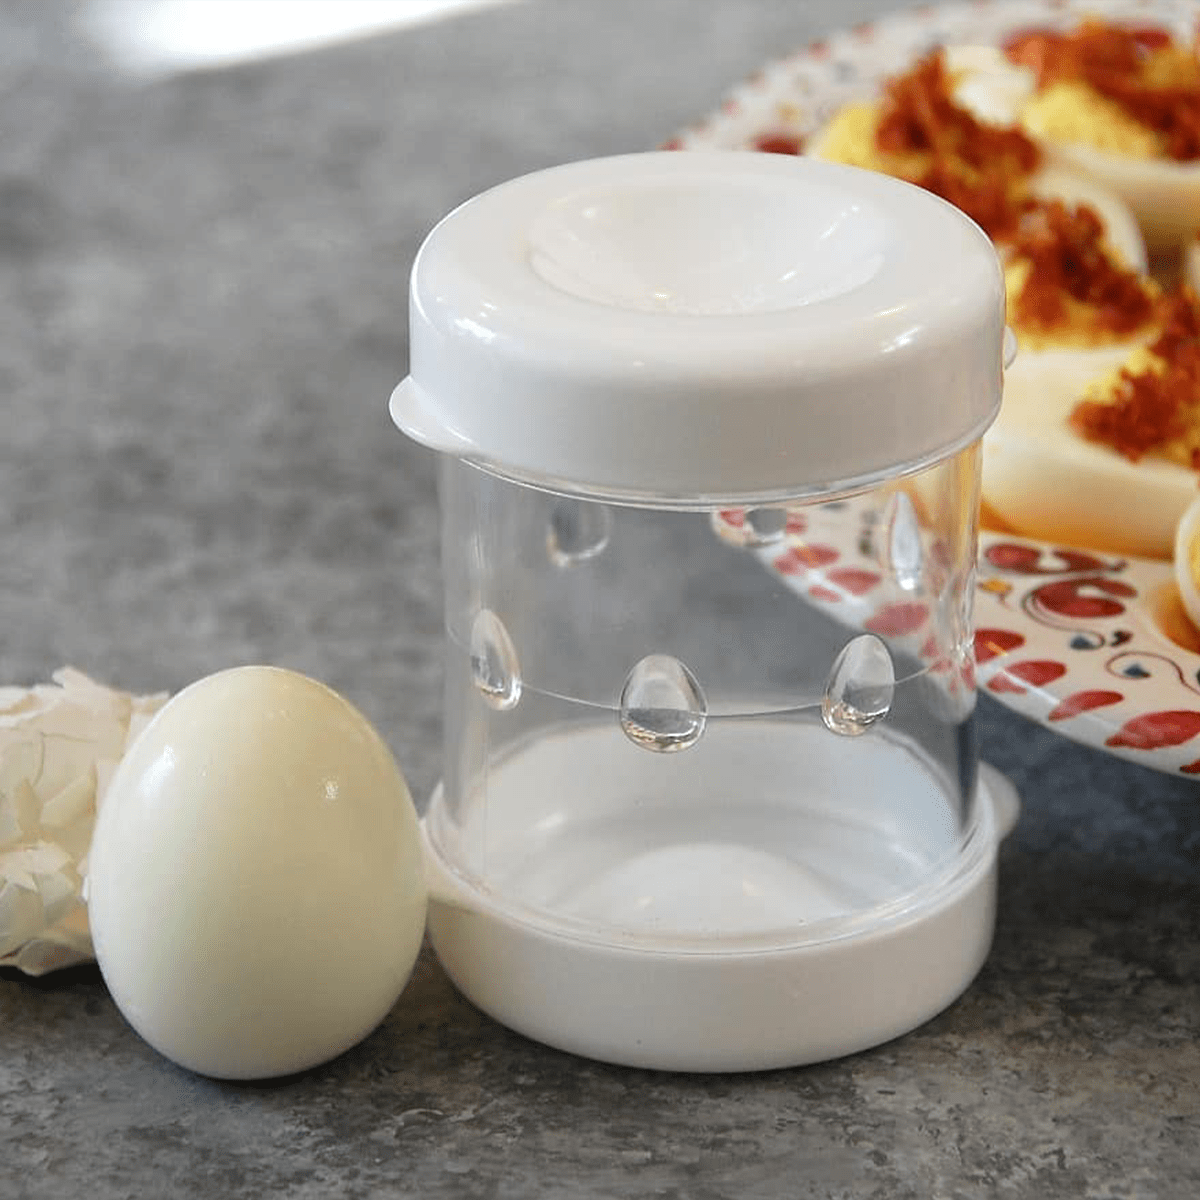 How to Use a Negg Hard-Boiled Egg Peeler